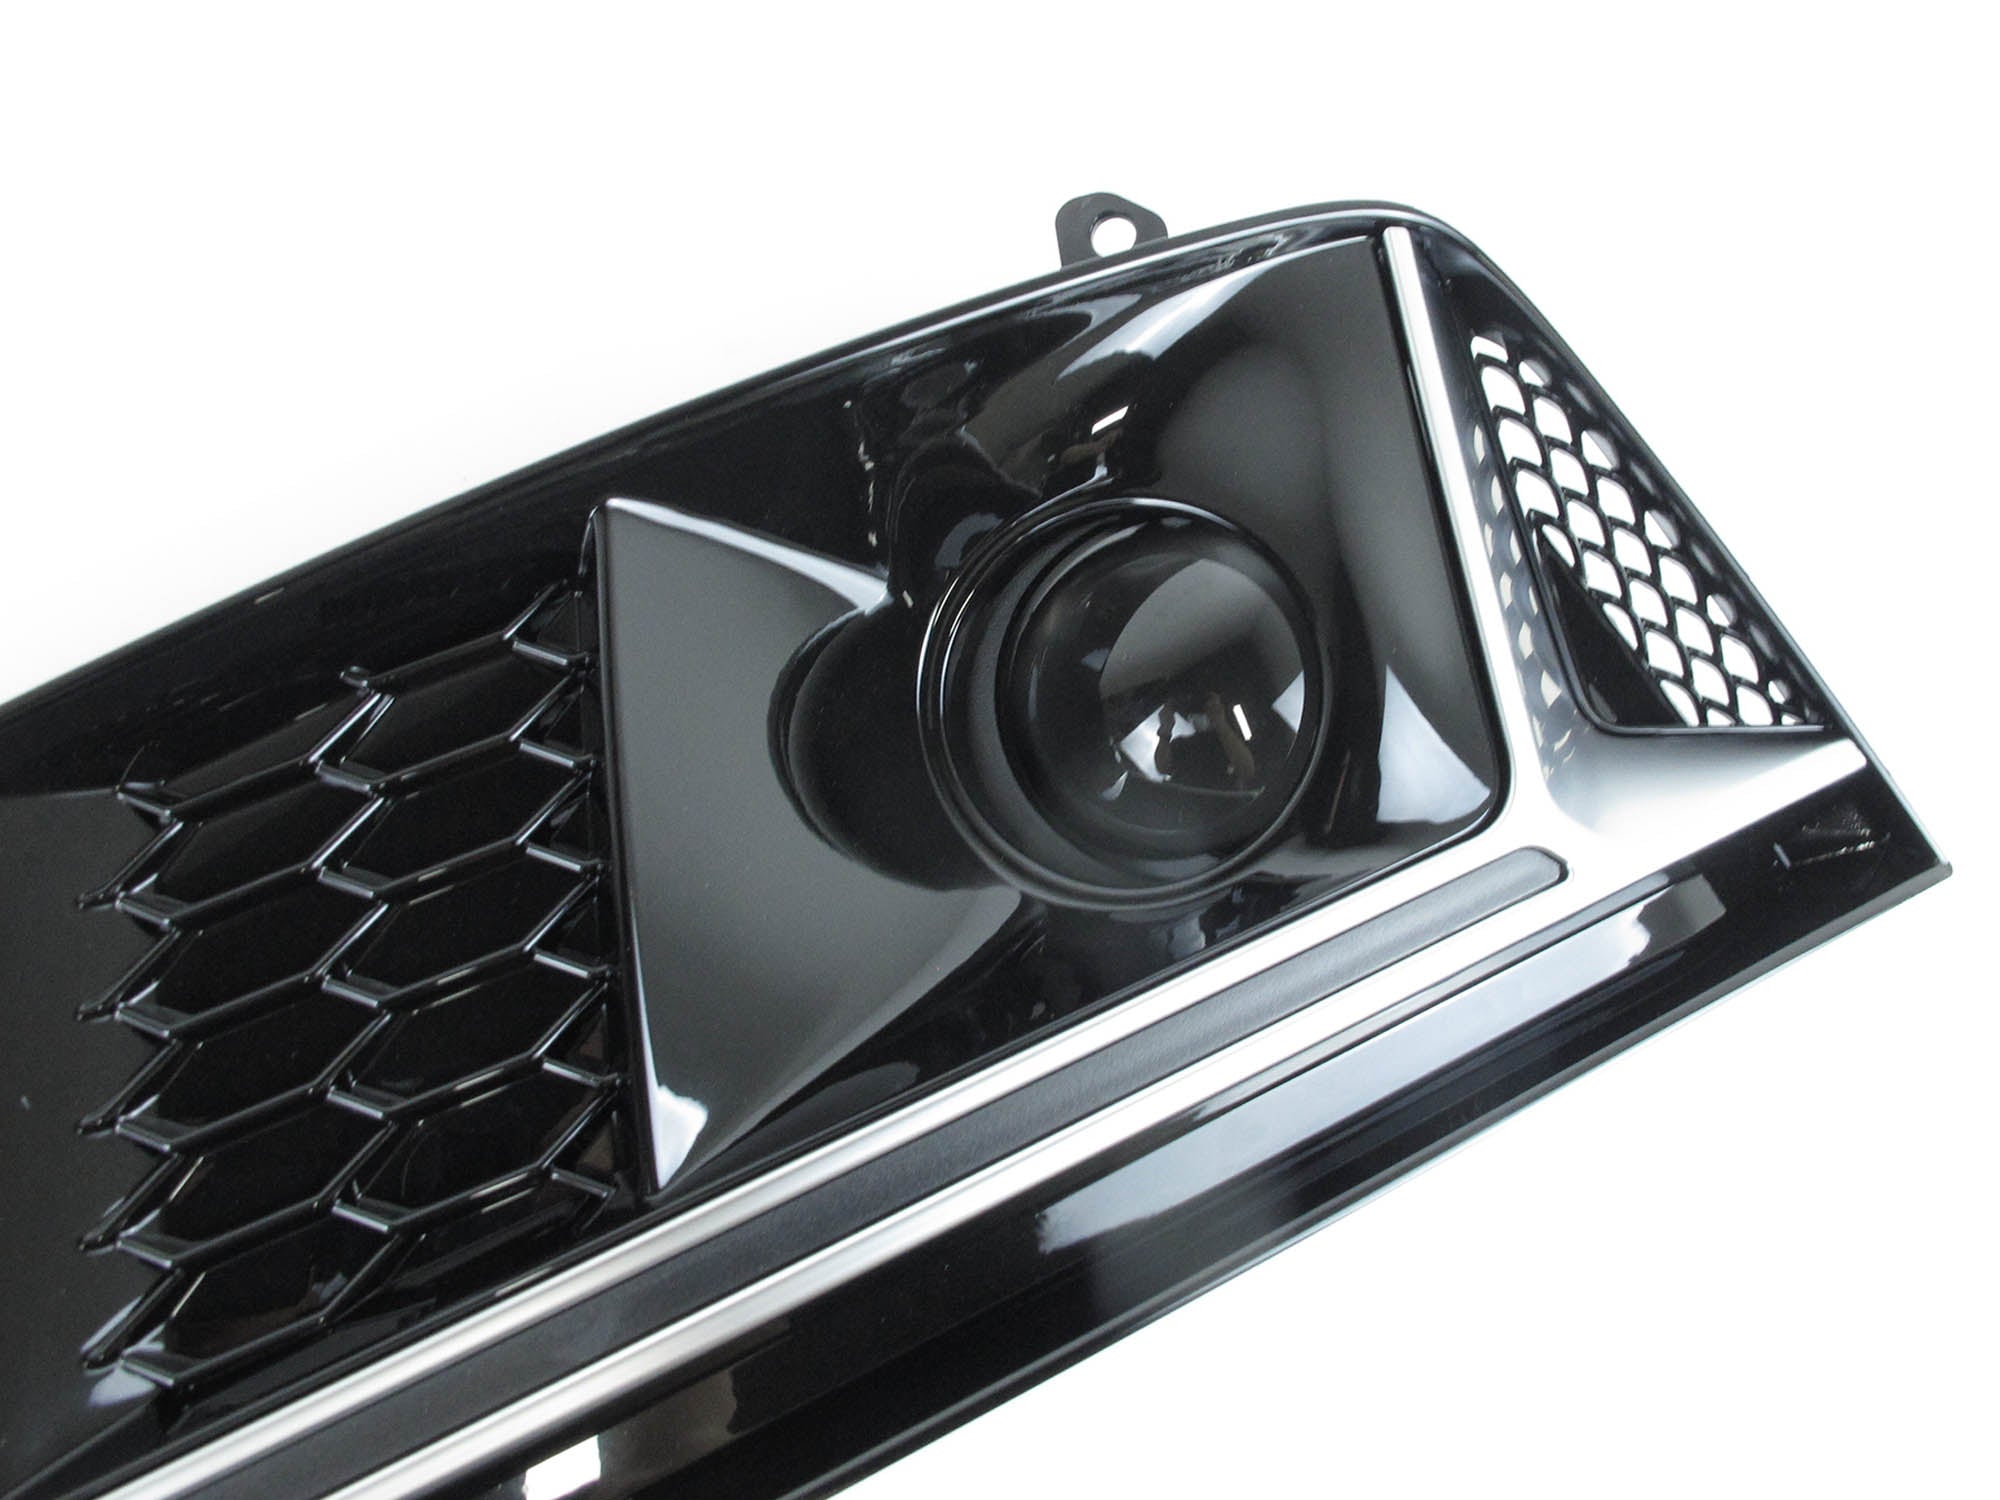 Nebelscheinwerfer Gitter Lüftungsgitter Grill für Audi A4 B9 Seriens. OHNE ACC 15-19